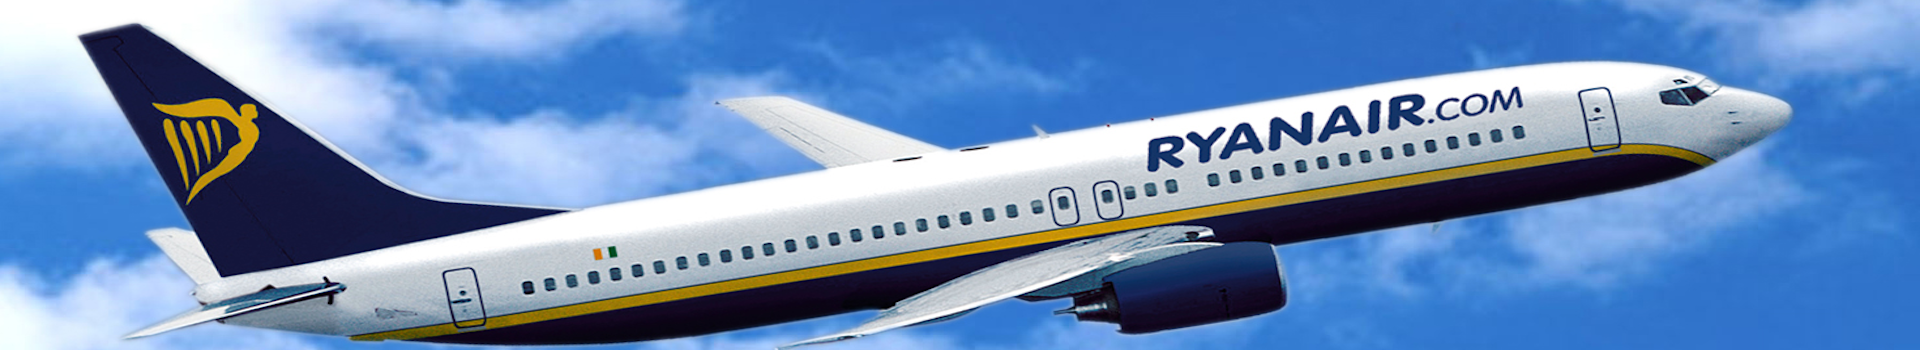 Η Ryanair Ανακοινωνει Νεο Δρομολογιο Απο Τη Ροδο Προς Τη Ρωμη